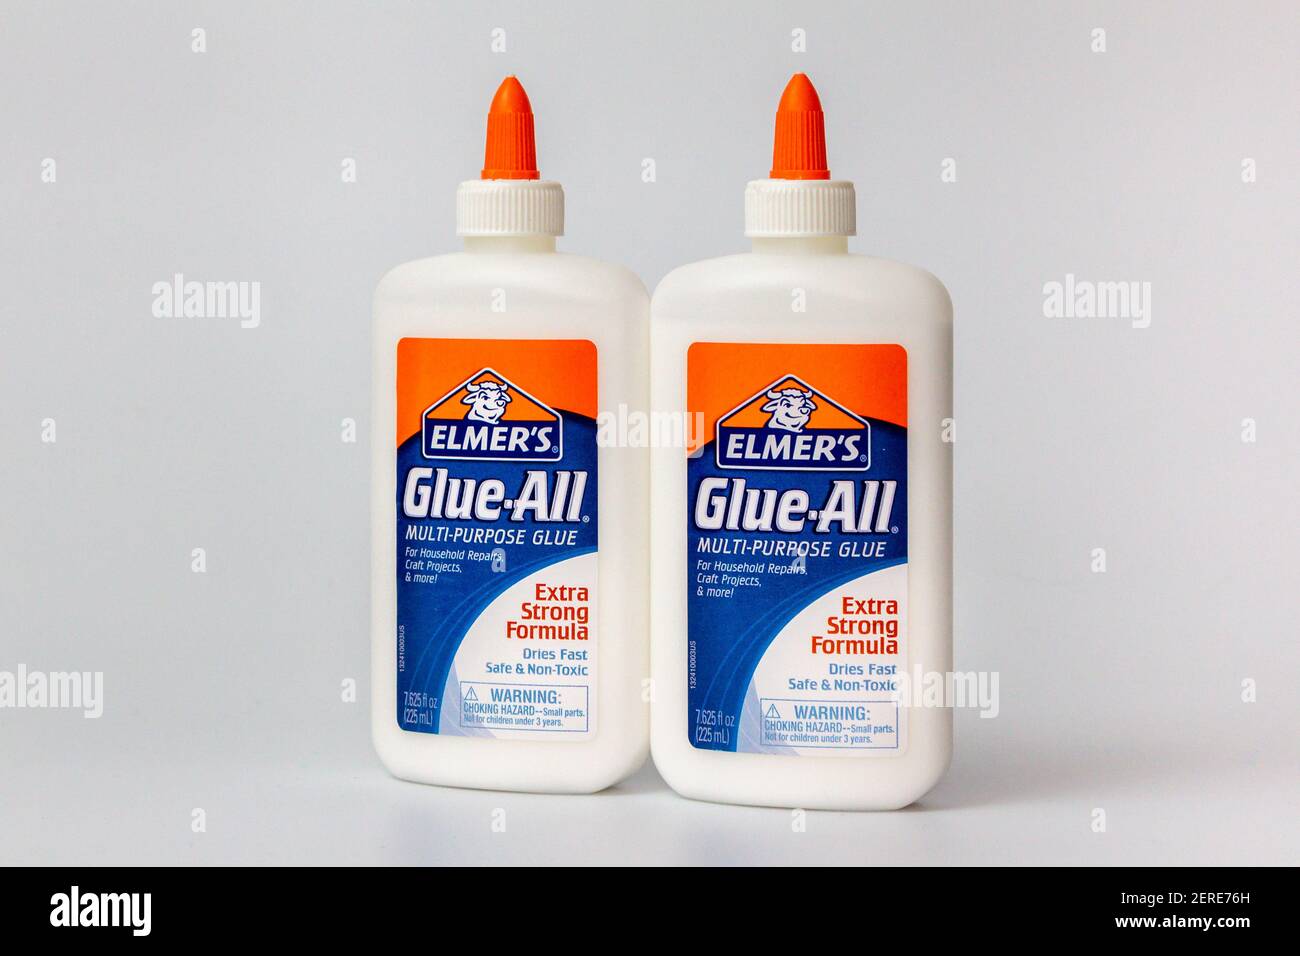 Elmer's Glue-All Extra Strong Formula Multi-Purpose Glue, 4 fl oz